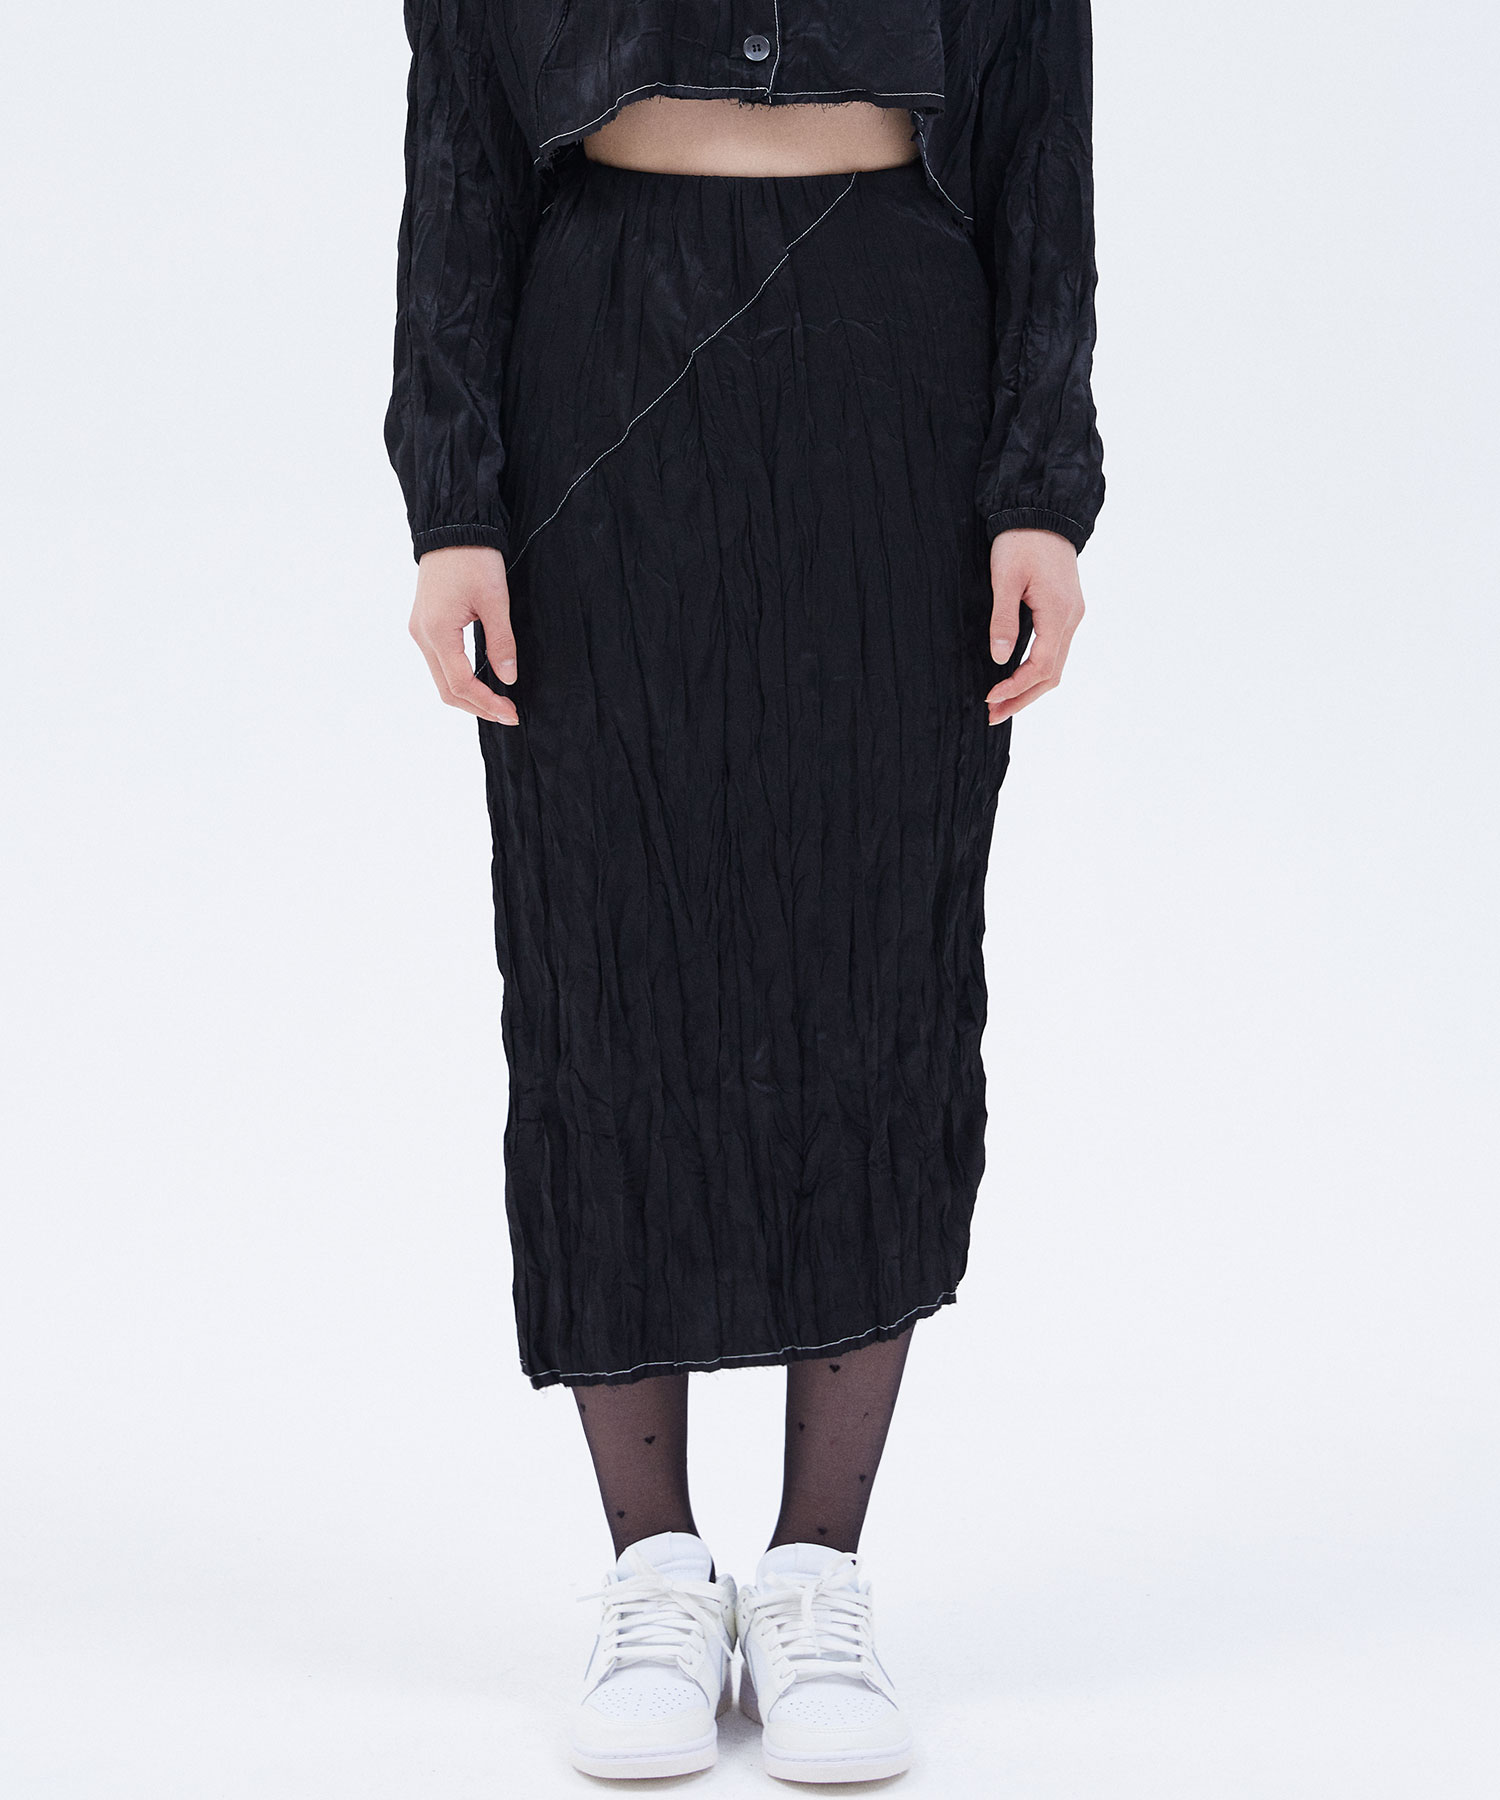 Spiral Skirt [Black]